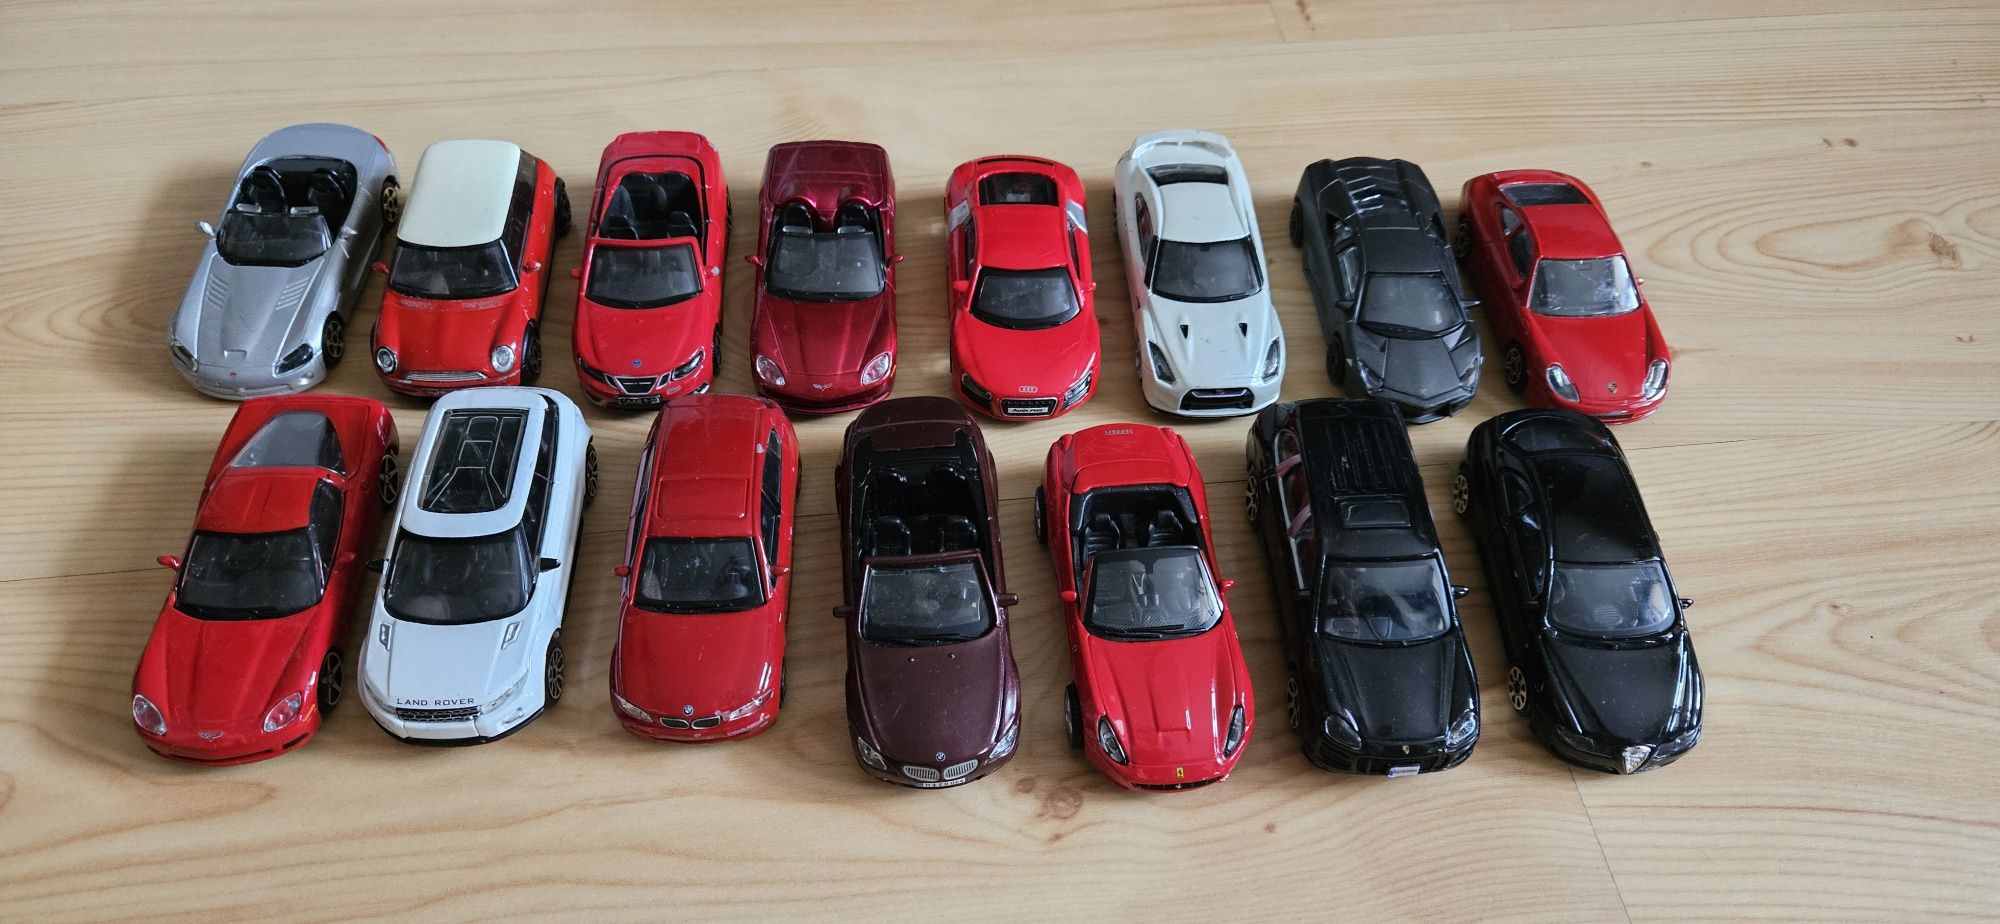 15 modeli aut Bburago w skali 1/43 - znane marki i sportowe auta